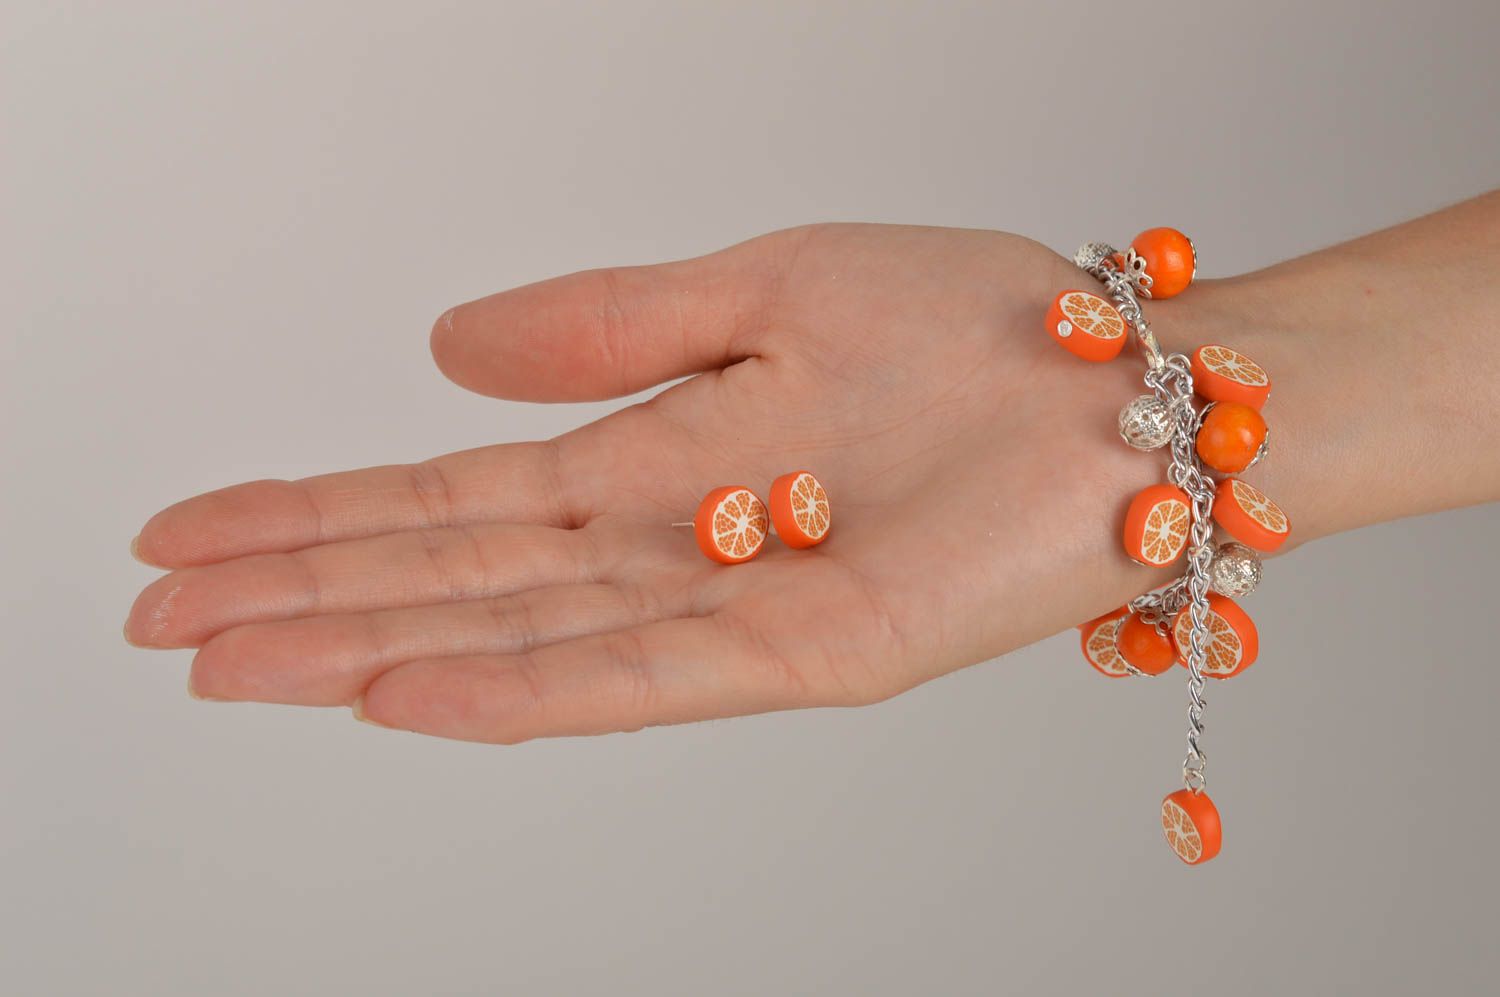 Wrist bracelet fashion earrings polymer clay jewelry oranges women jewelry  photo 2